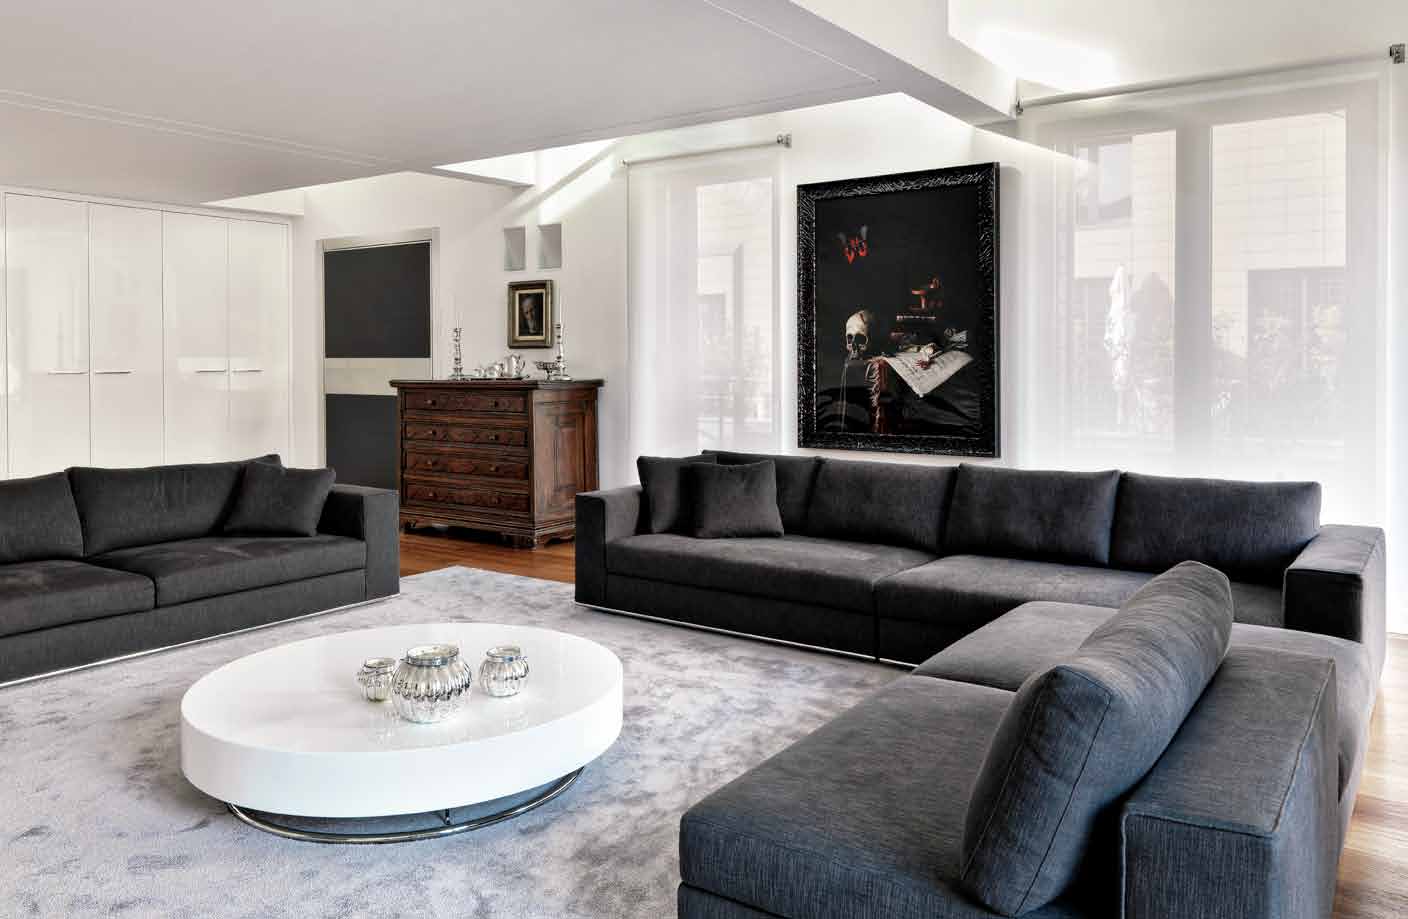 Veduta del soggiorno con divani in tessuto nero in contrapposizione al bianco ottico delle pareti, del grigio del tappeto e del mobile